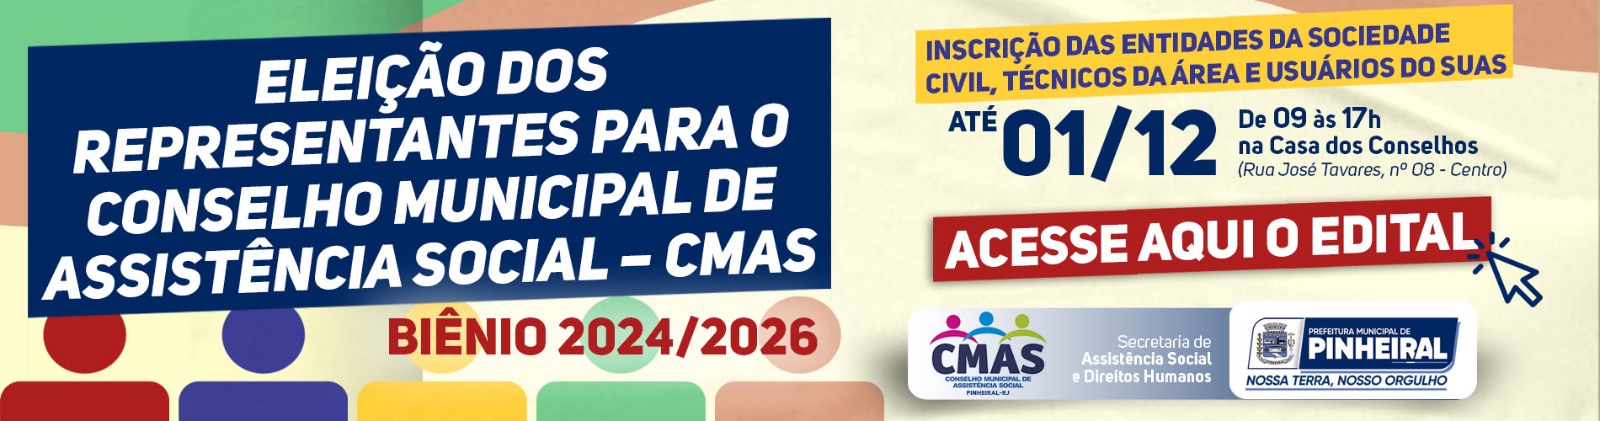 Eleição Representantes - CMAS - 2024/2026